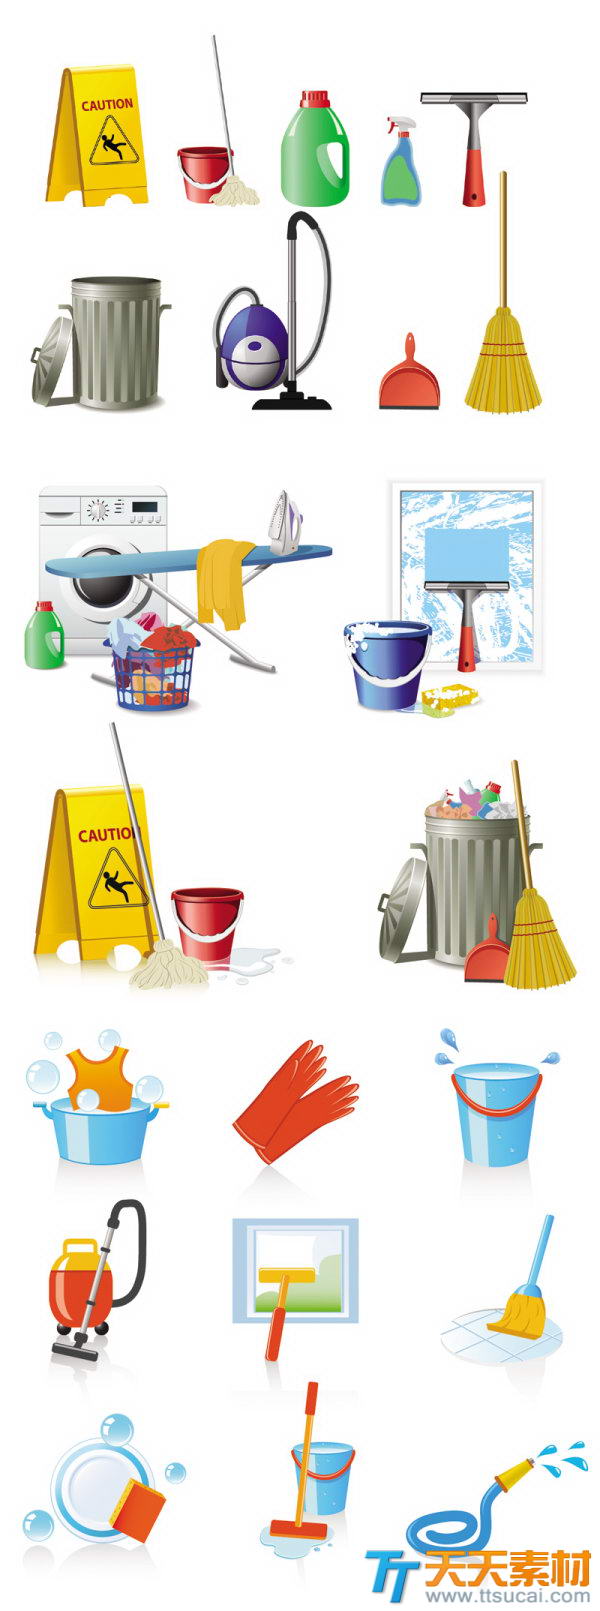 家庭清洗保洁工具图标矢量素材